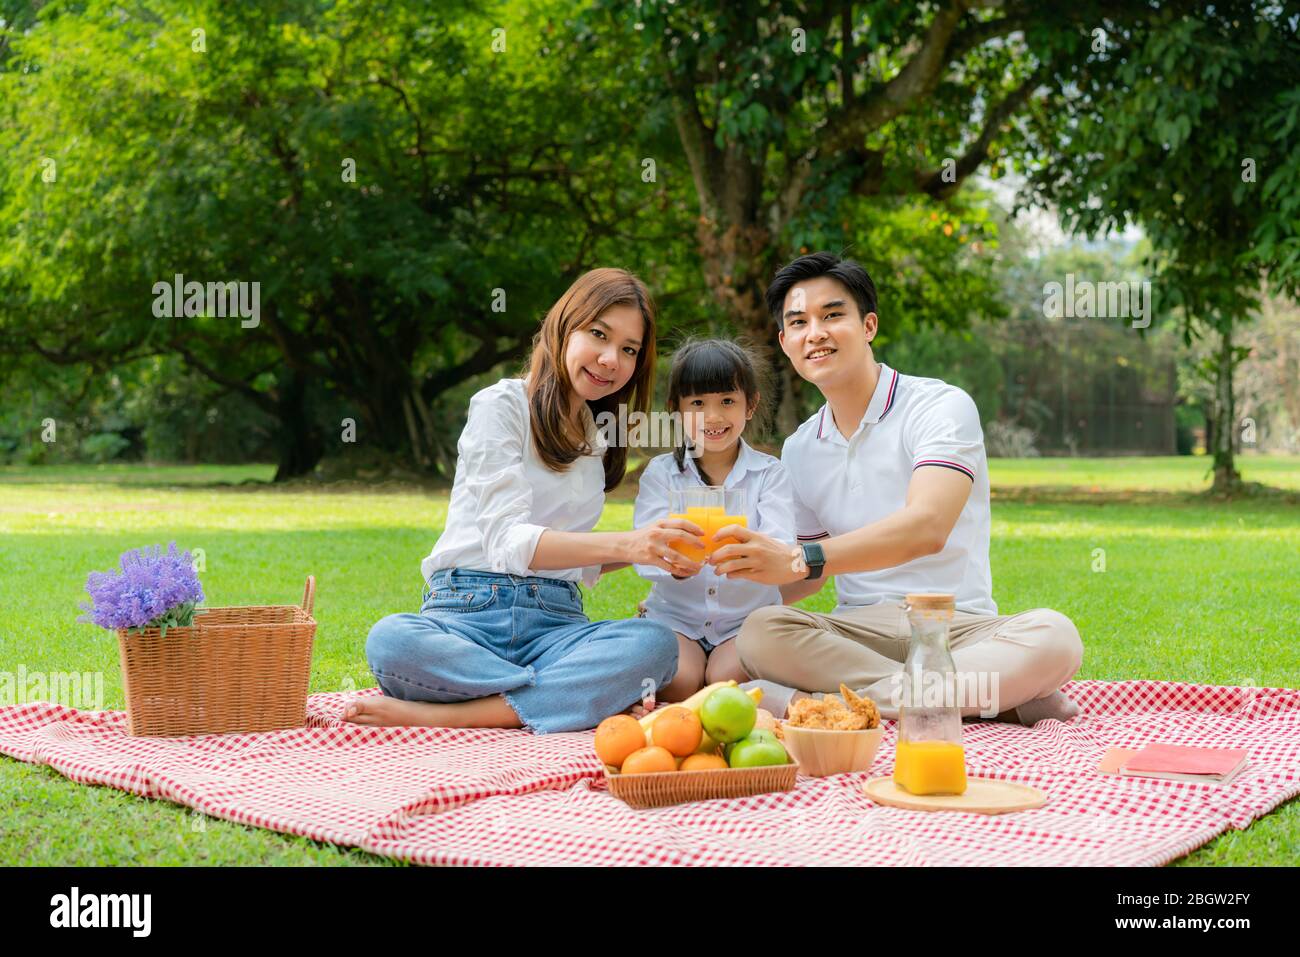 Asiatische Teenager Familie glücklich Urlaub Picknick Moment im Park mit Vater, Mutter und Tochter mit Orangensaft Glas und Lächeln glücklich verbringen vacatio Stockfoto